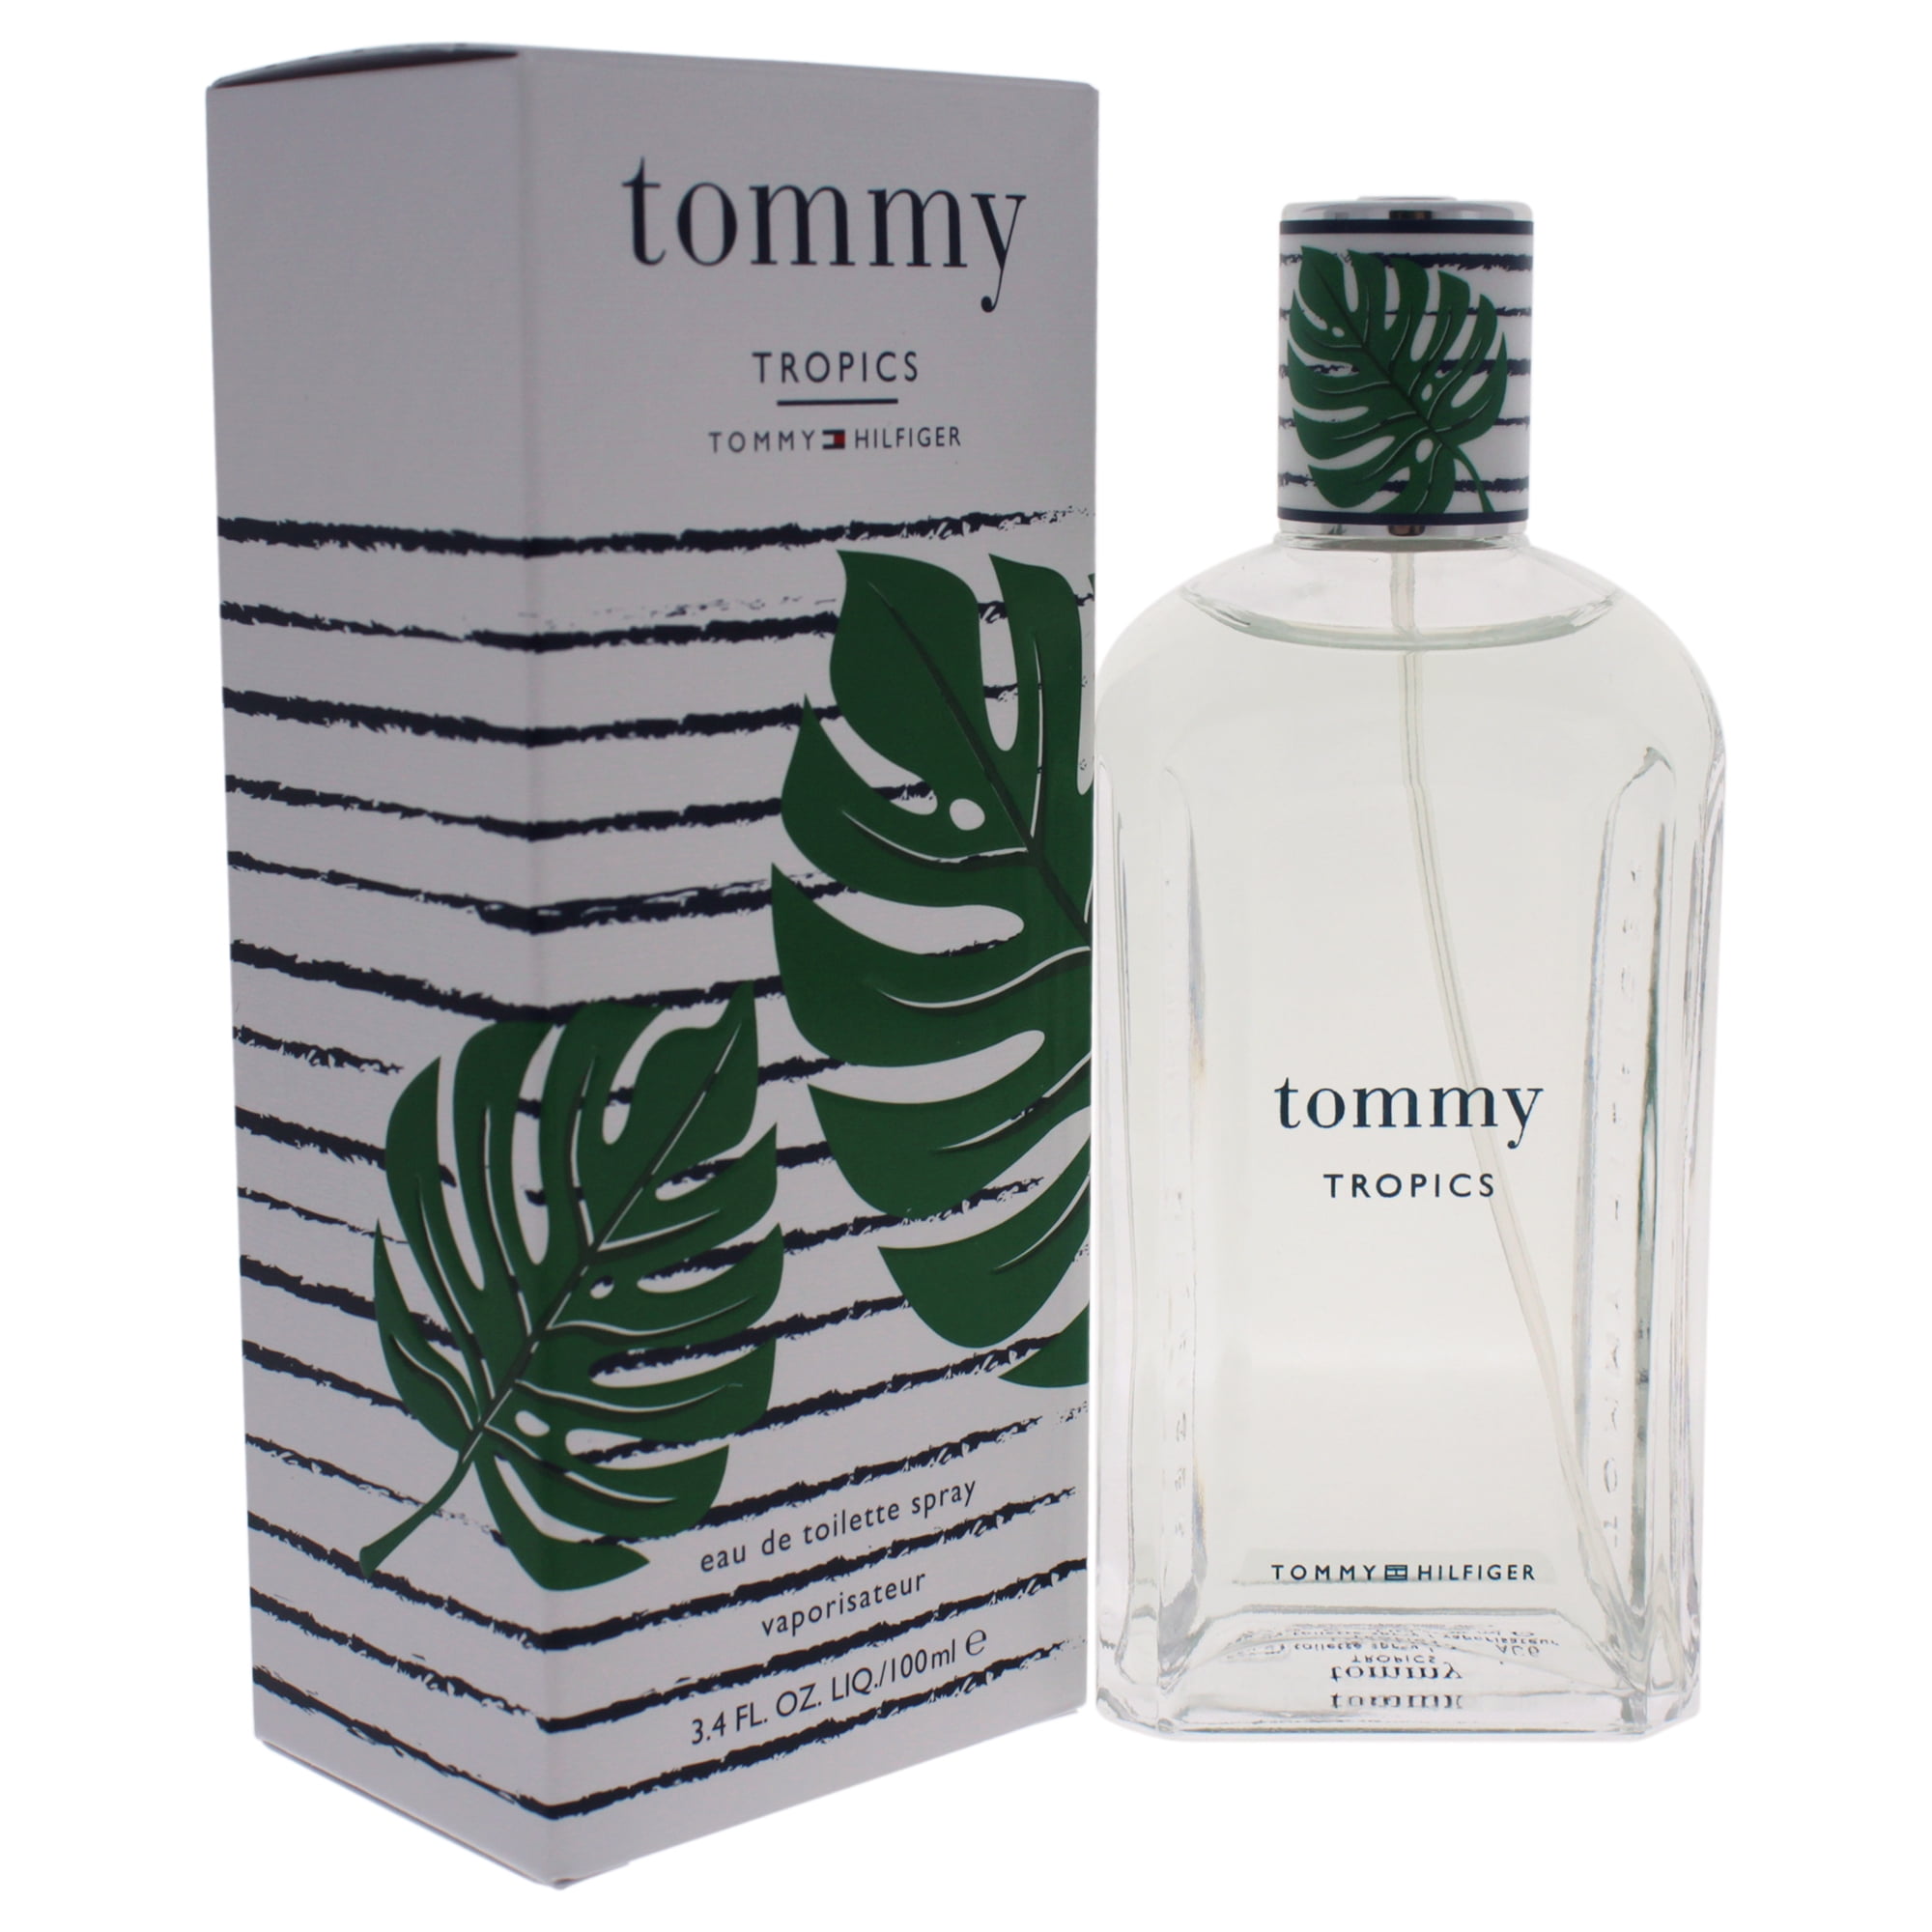 Tommy Hilfiger Beauty Tommy Tropics Eau de Toilette, Cologne for Men, - Walmart.com